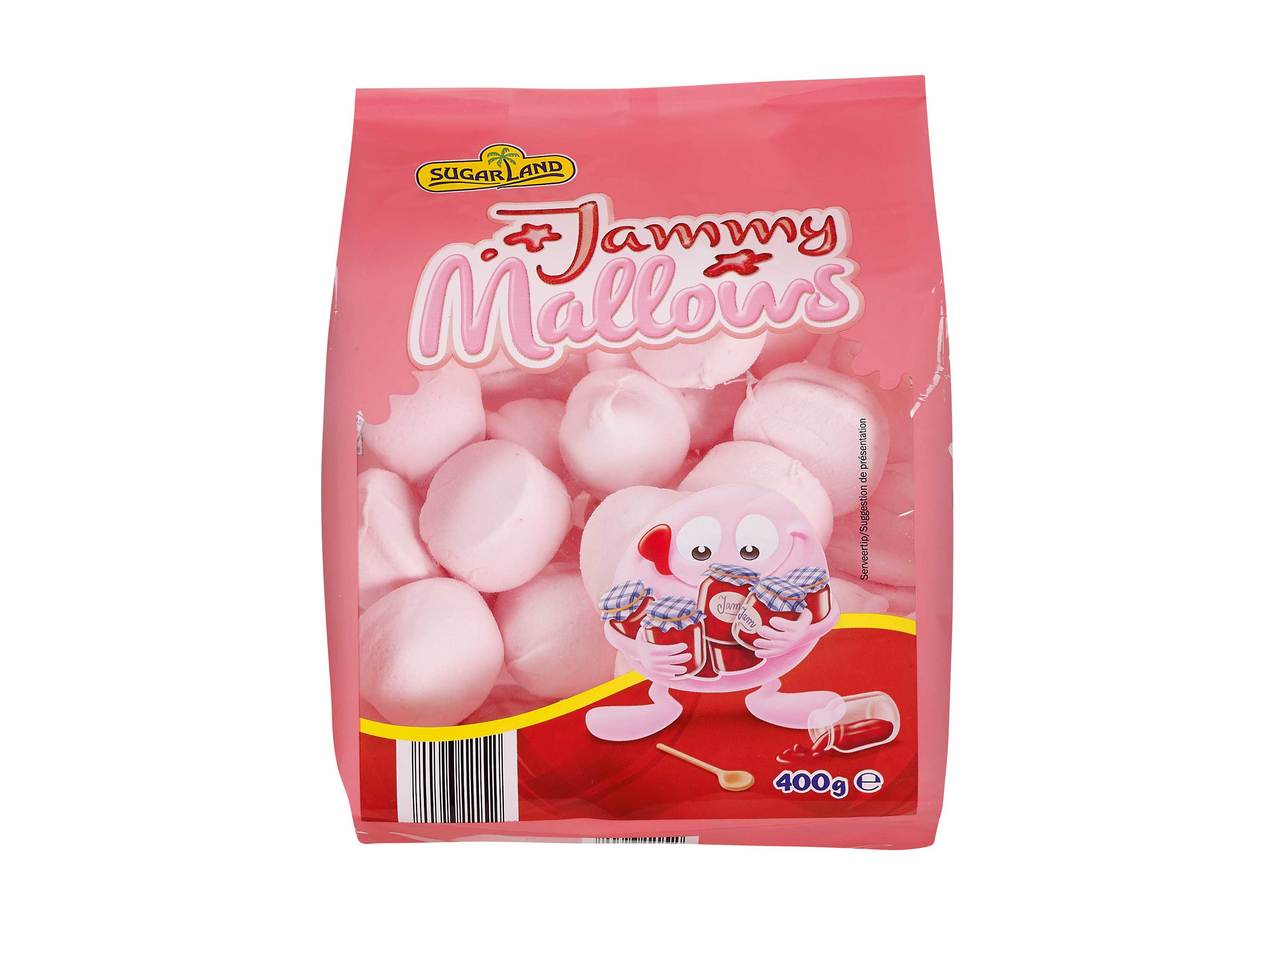 Jammy marshmallows